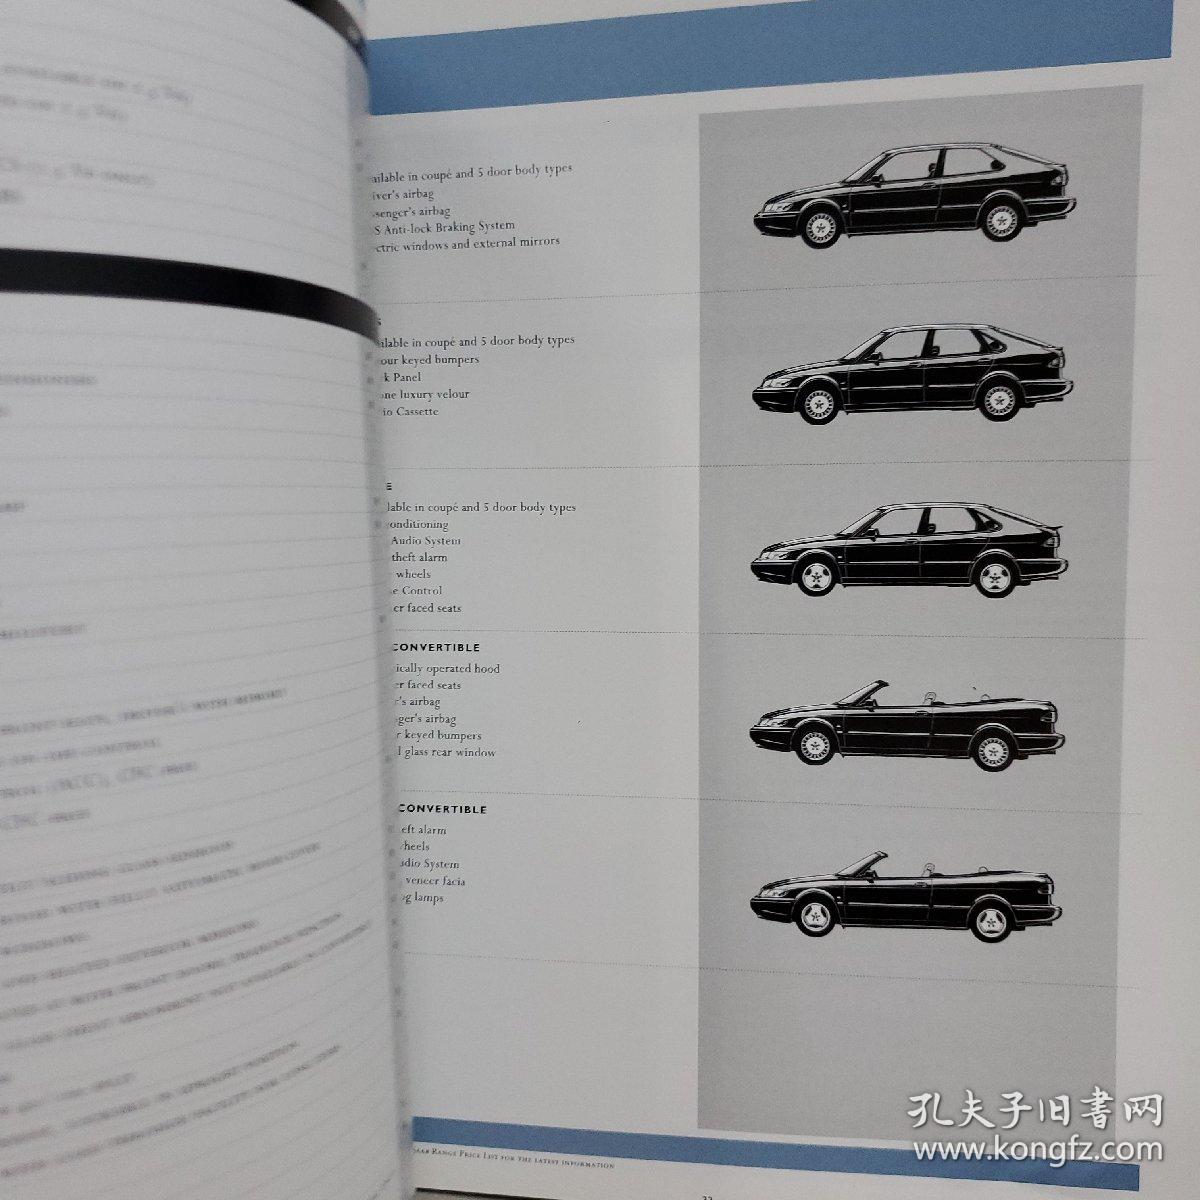 1997年 瑞典 绅宝 萨博 综合车型 汽车 SAAB 轿车 广告 画册 宣传册 目录 样本